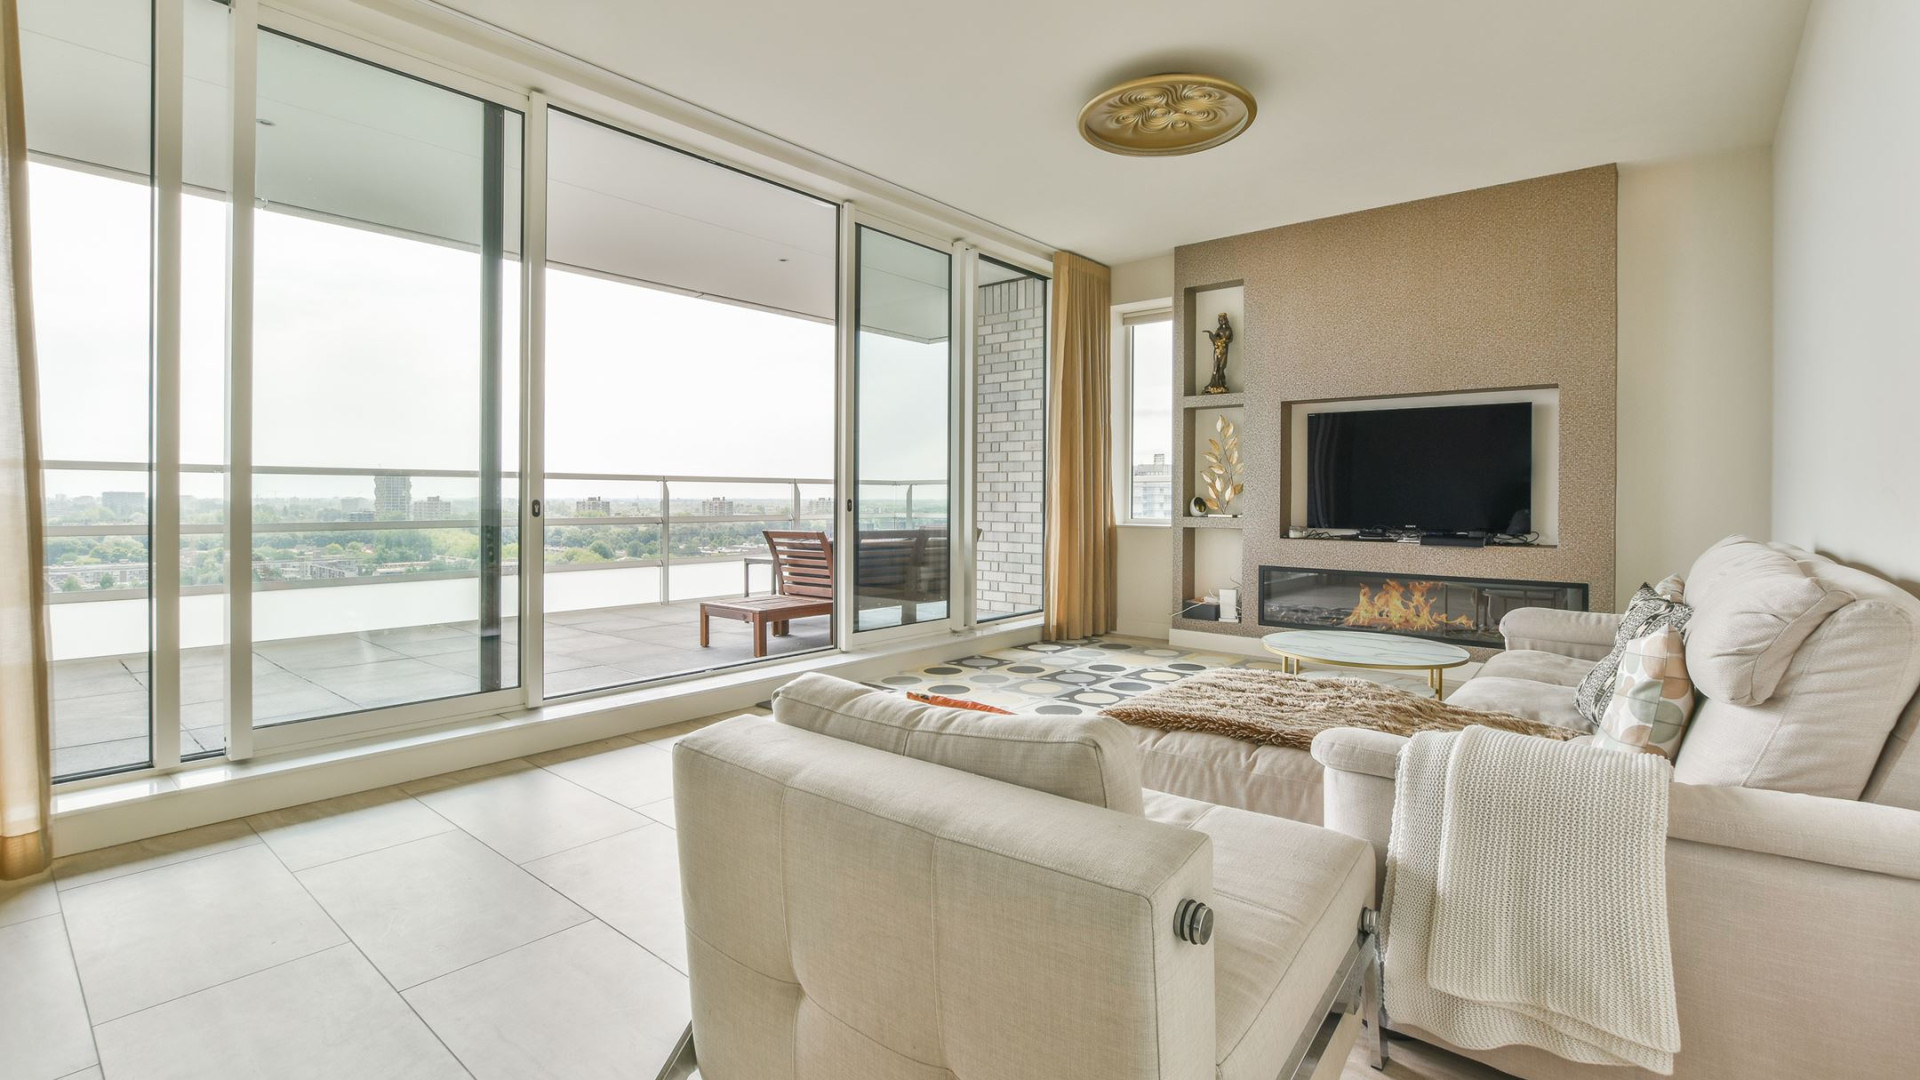 Oranje en Ajax voetballer Jurrien Timber koopt dit luxe appartement aan de Amsterdamse Zuid-As. Zie foto's 3